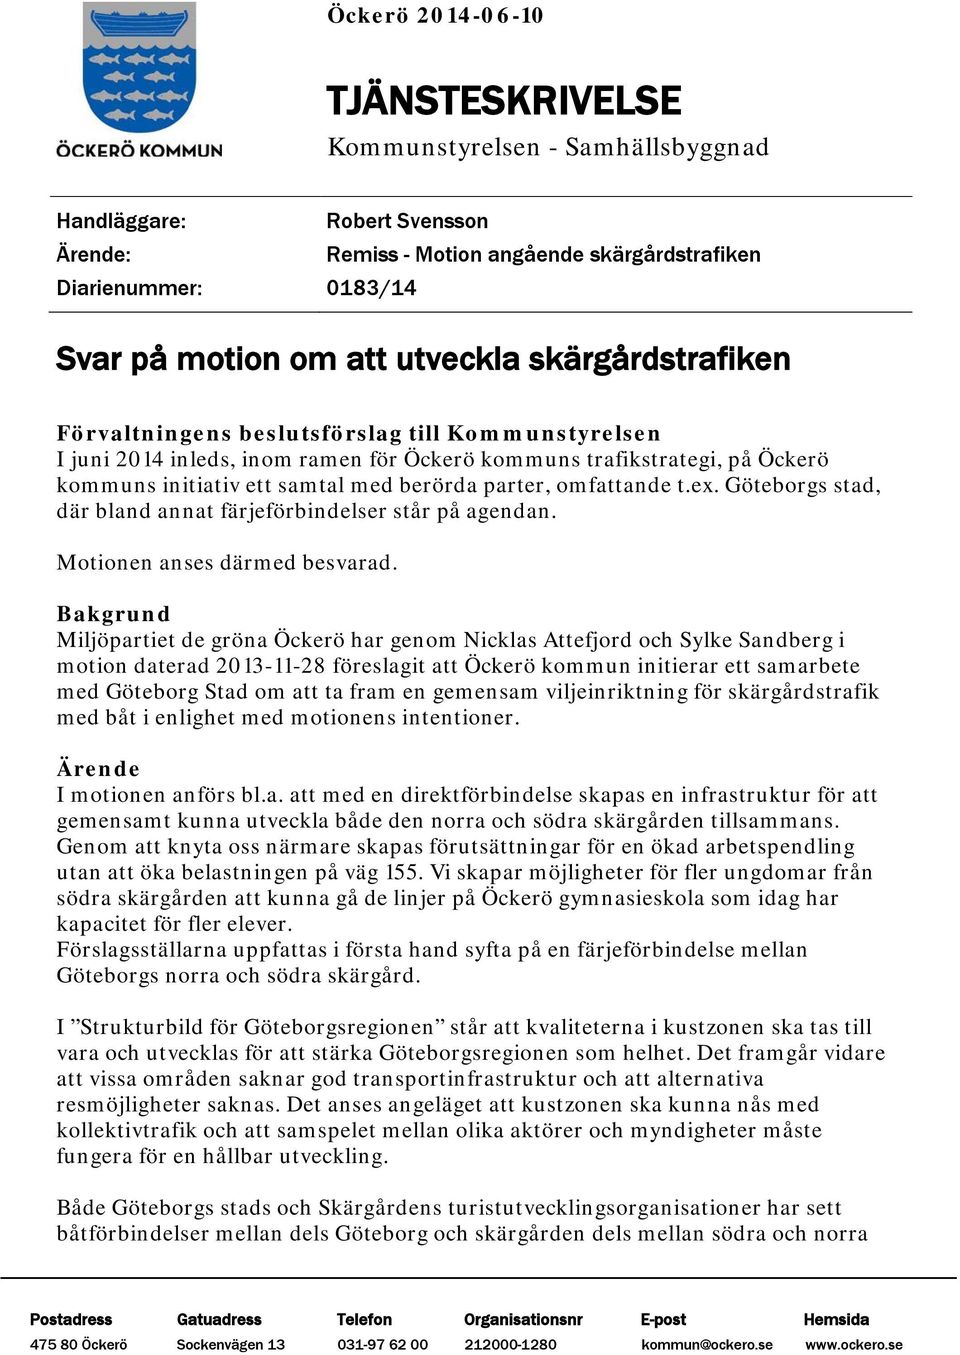 parter, omfattande t.ex. Göteborgs stad, där bland annat färjeförbindelser står på agendan. Motionen anses därmed besvarad.